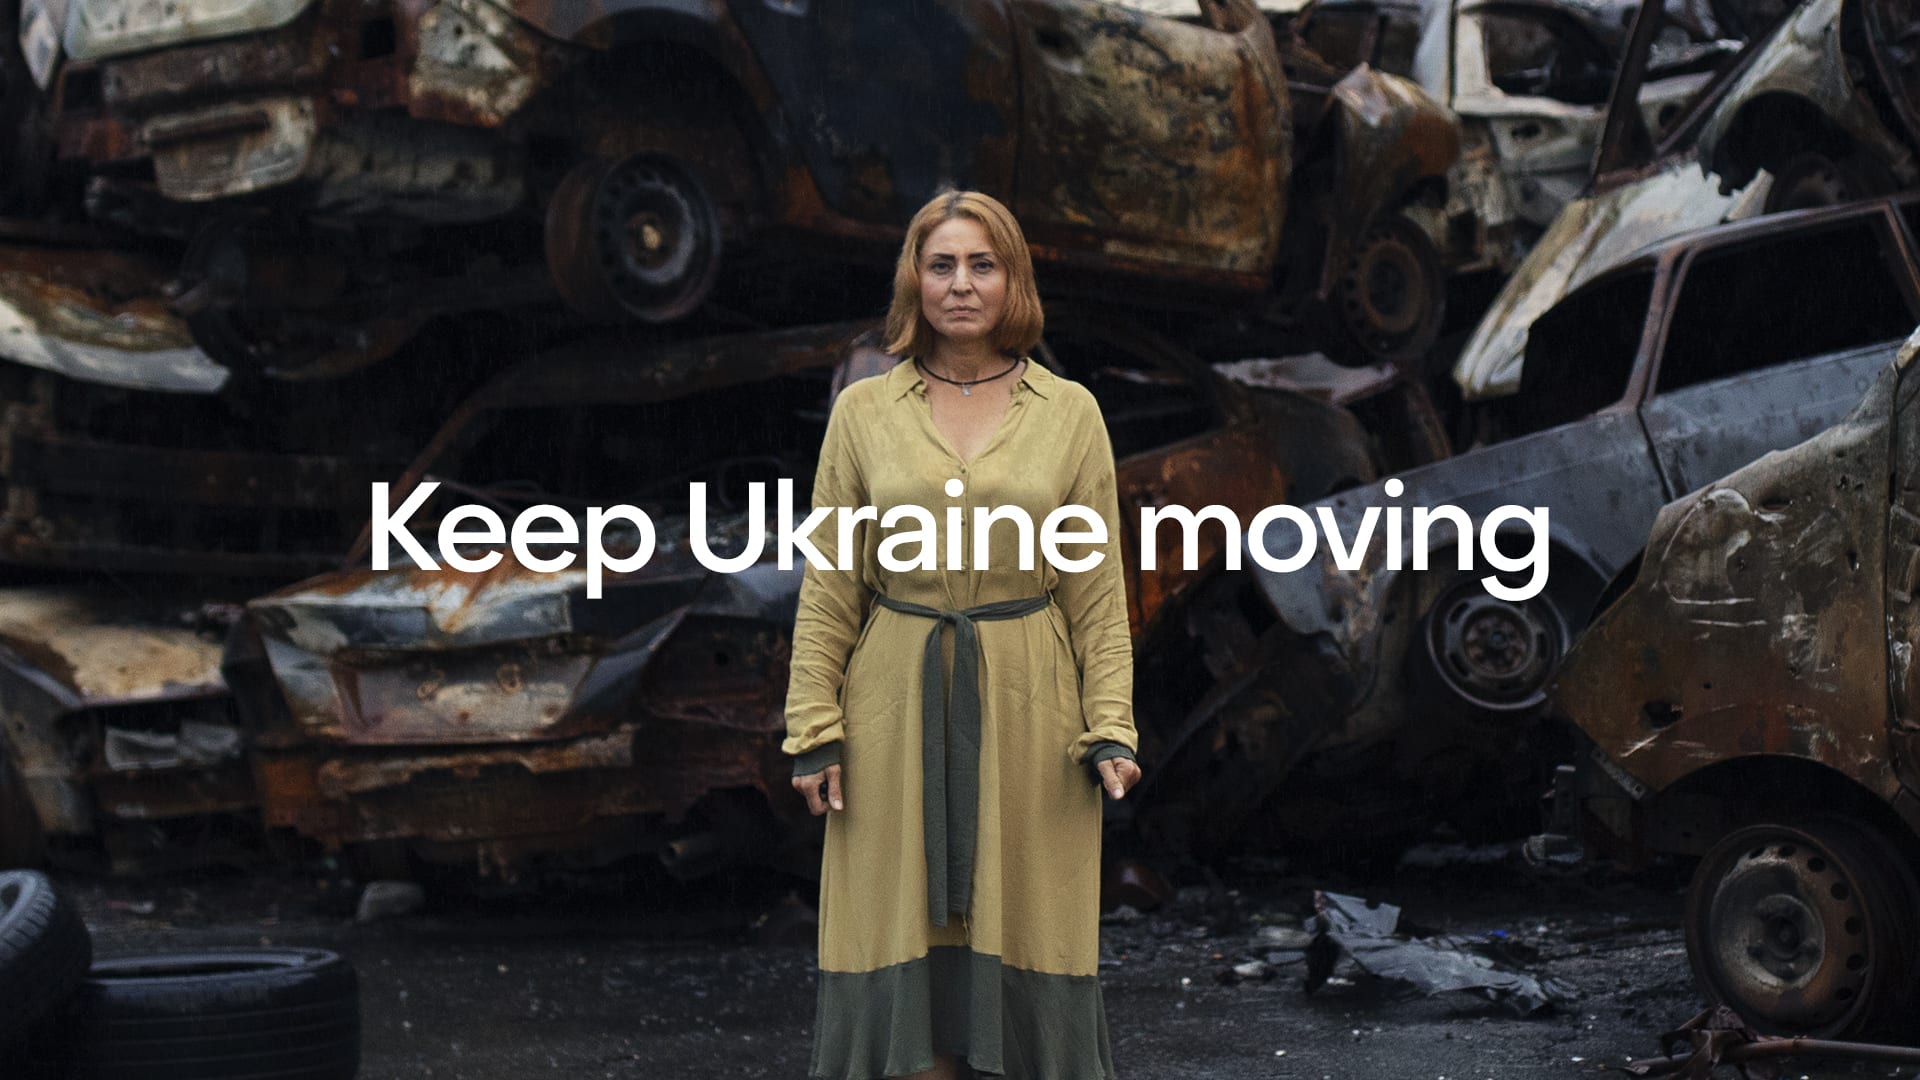 How Uber raised $1.5 million to help Ukraine